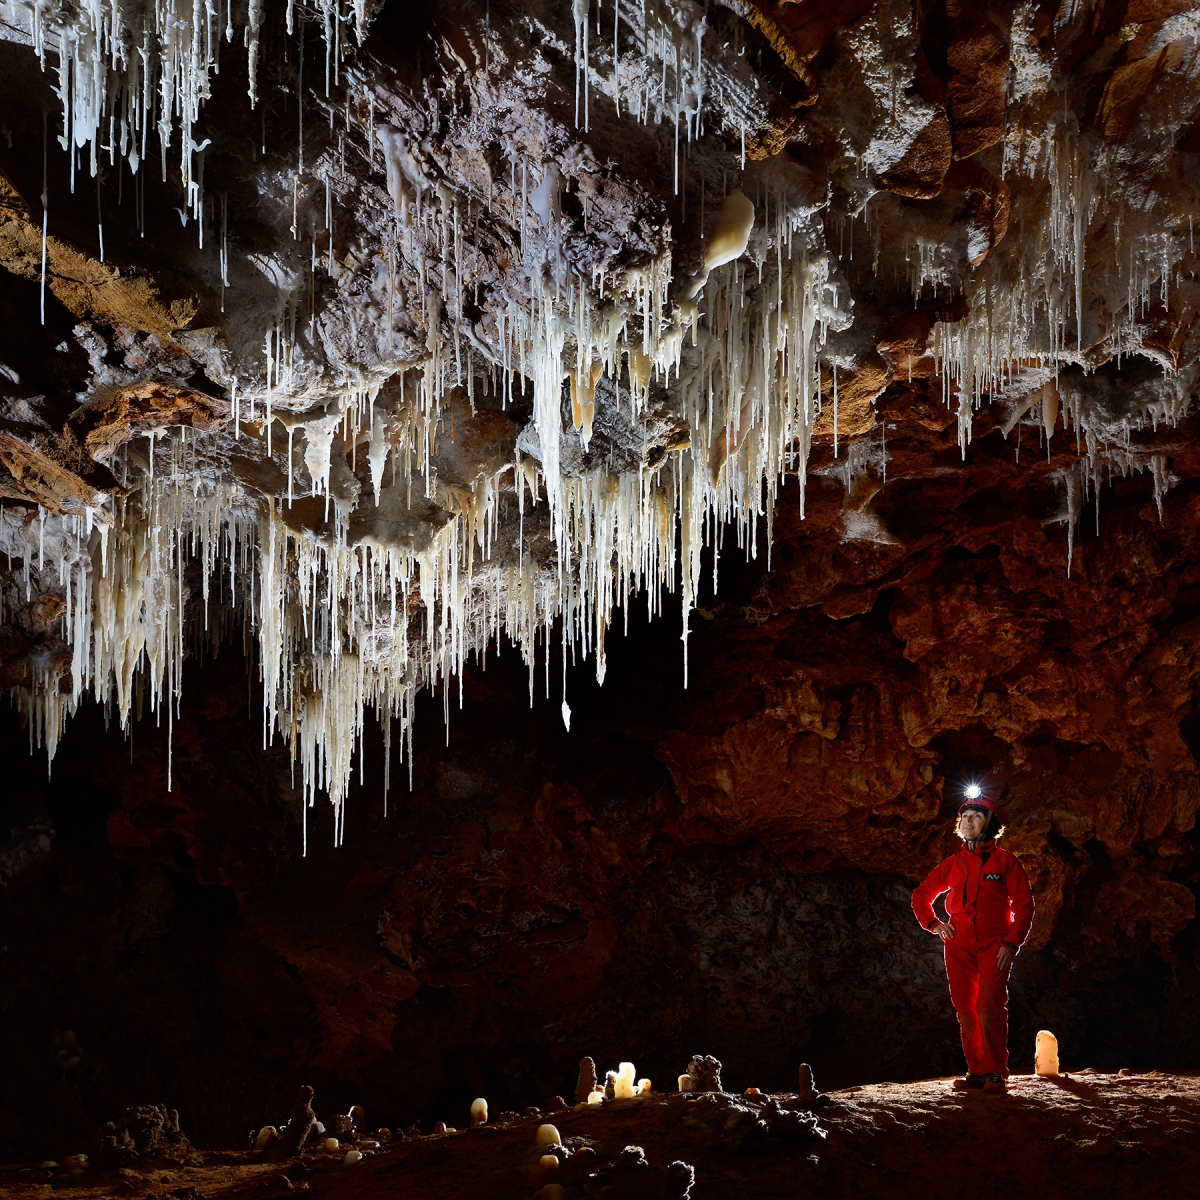 Grotte de Clamouse - Spéléo devant ensemble de fistuleuses et stalactites